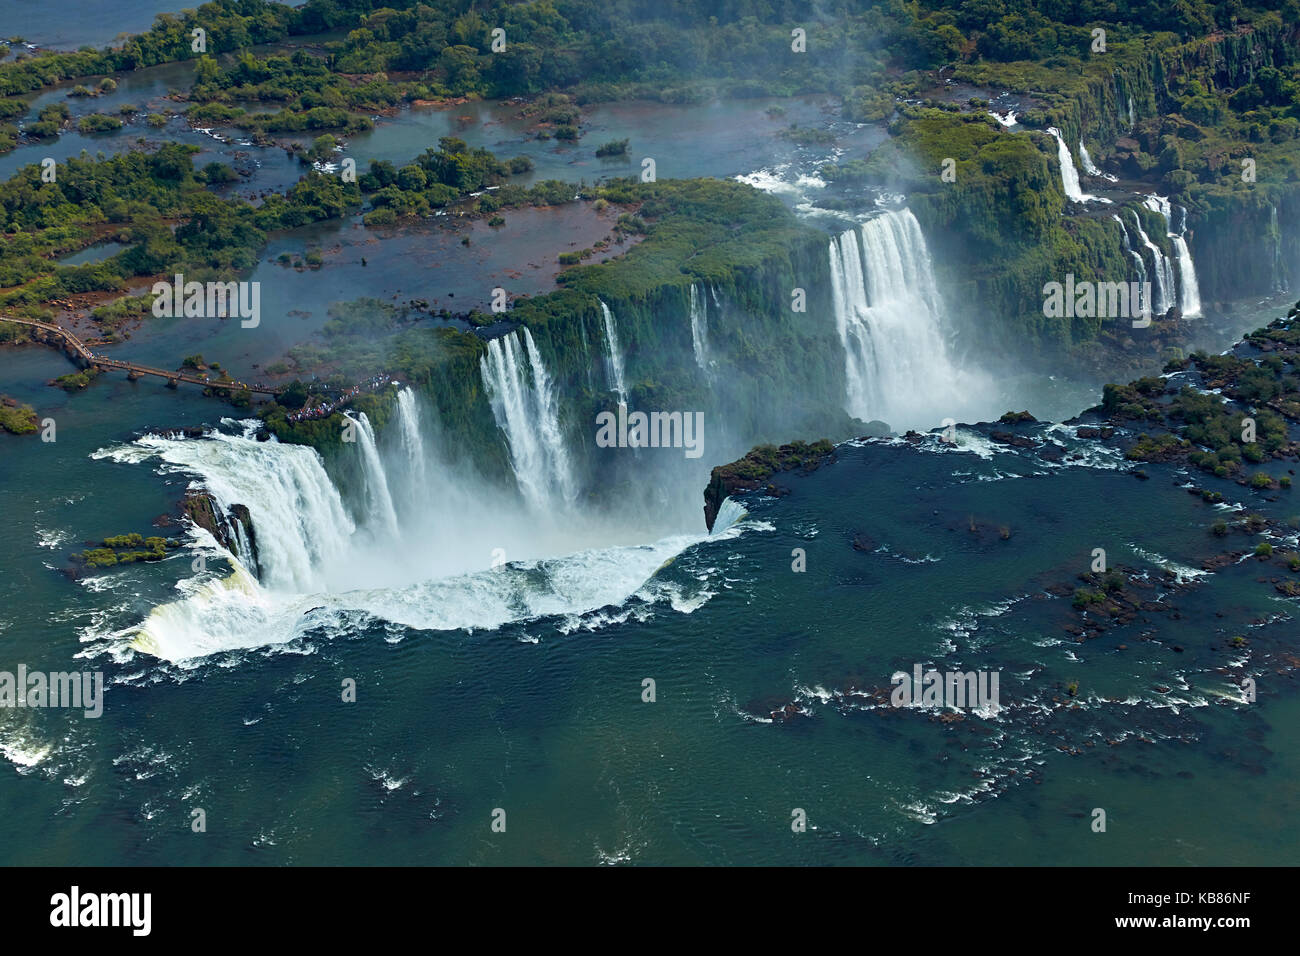 Passerelle et gorge du diable (Garganta do Diabo), chutes d'Iguazu, sur Brésil - frontière Argentine, Amérique du Sud - aérien Banque D'Images